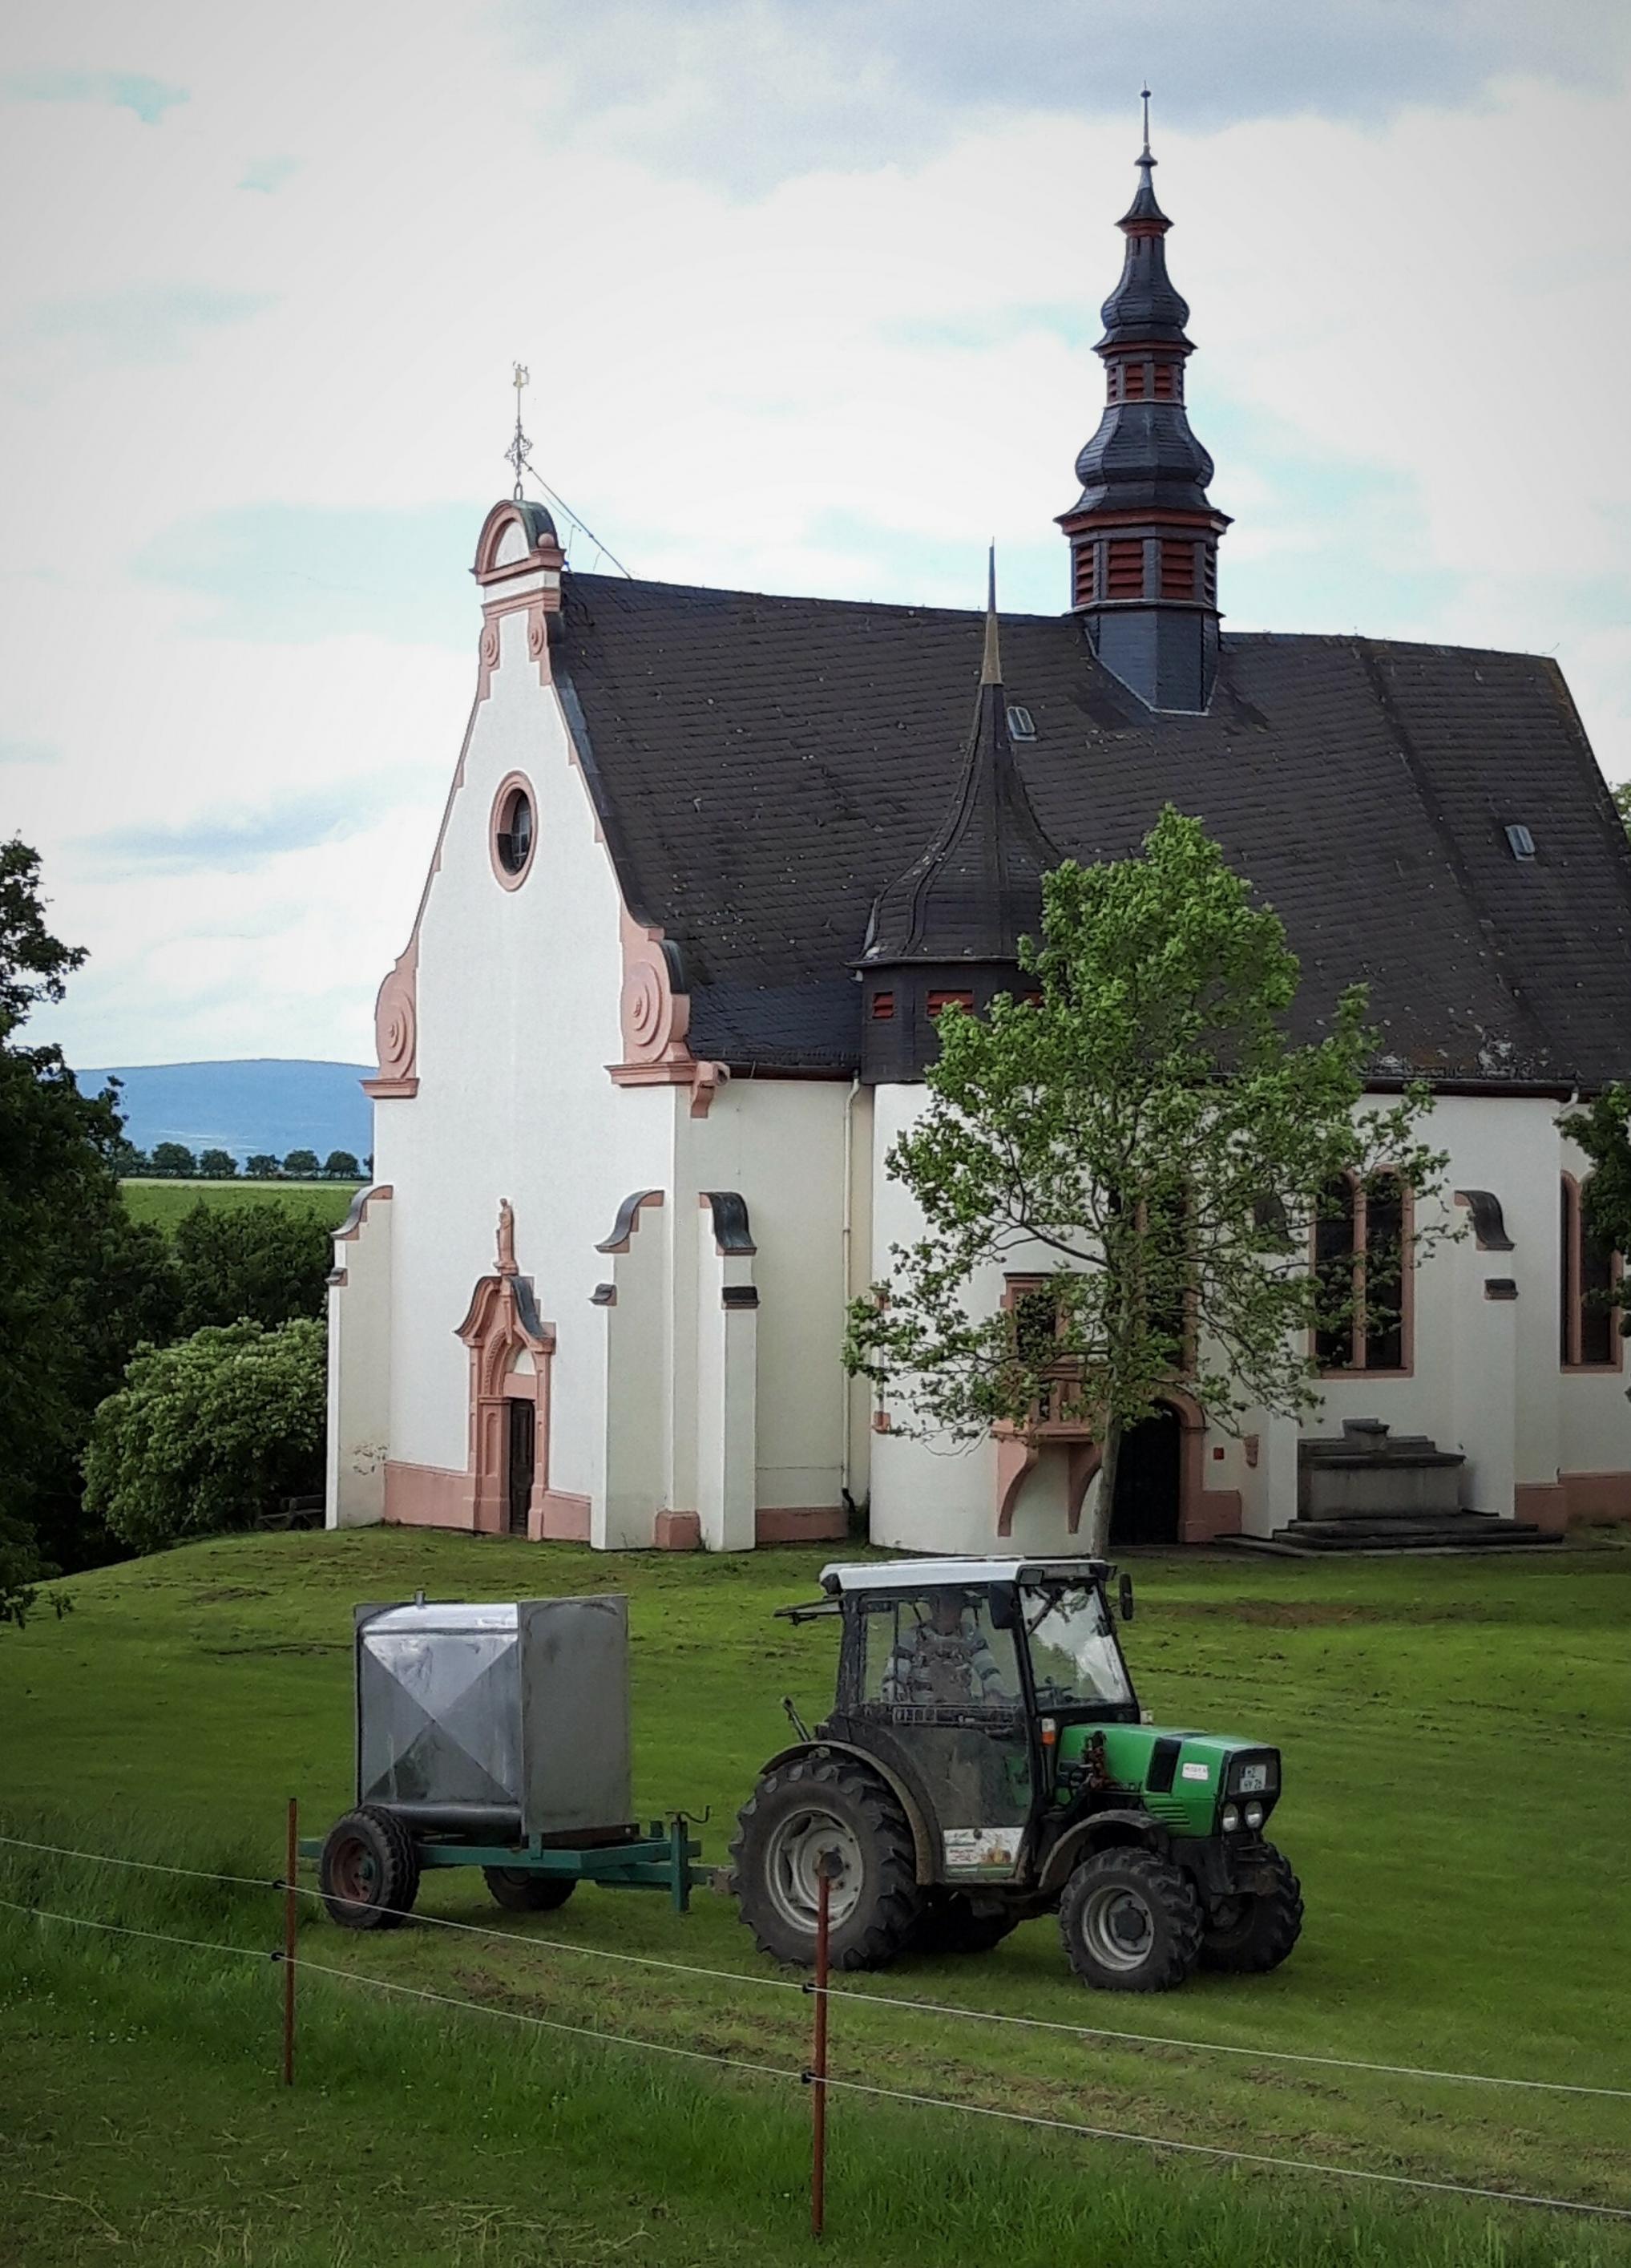 Eine kleine Barockkirche auf einer Anhöhe, umrahmt von einer Wiese, auf der ein kleiner Traktor unterwegs ist.